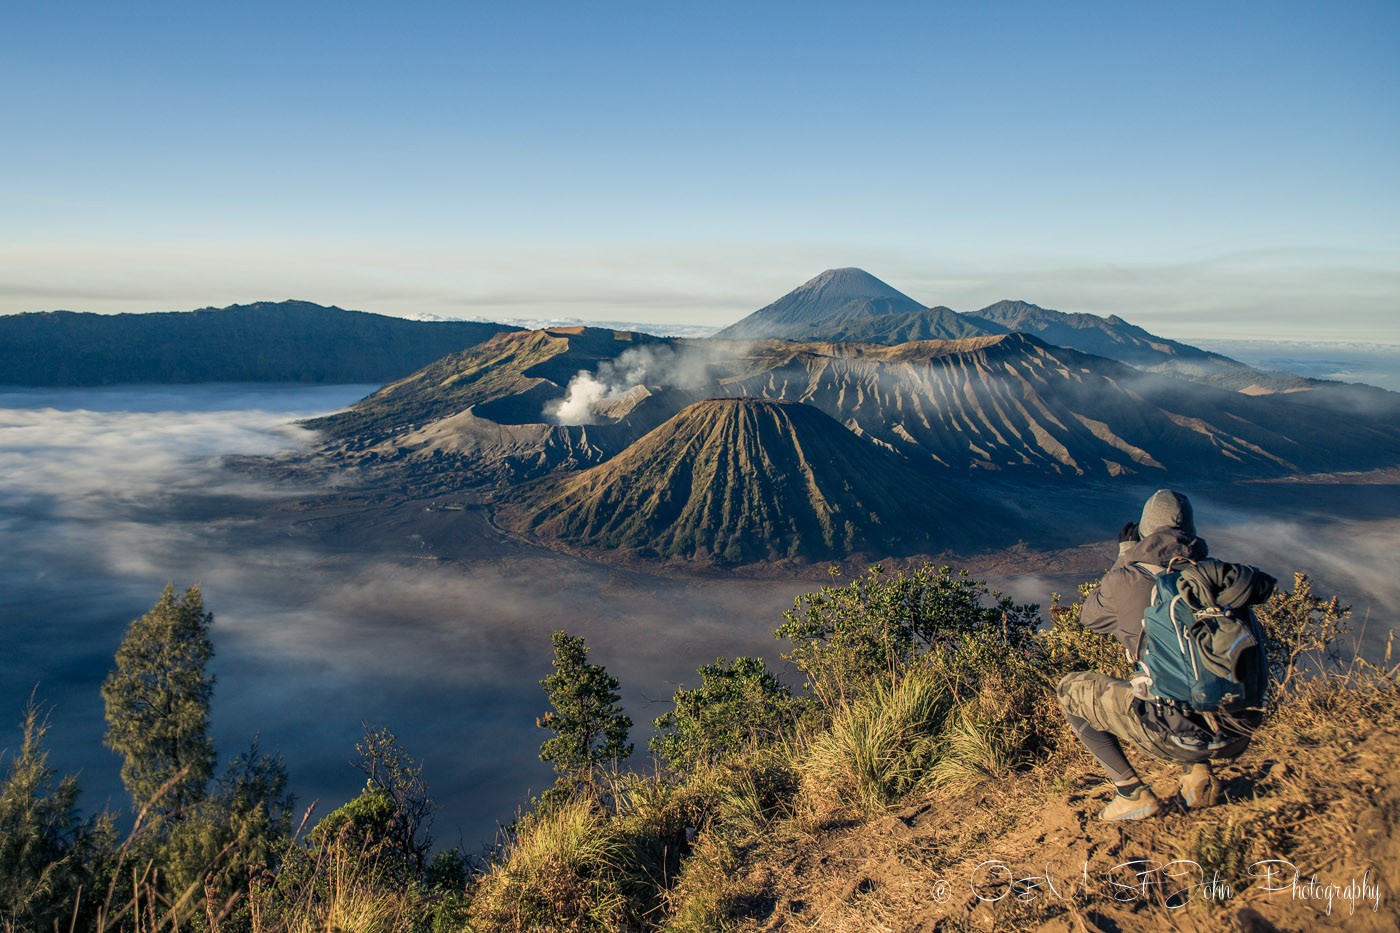 麦克斯在拍布罗默山的照片。印尼